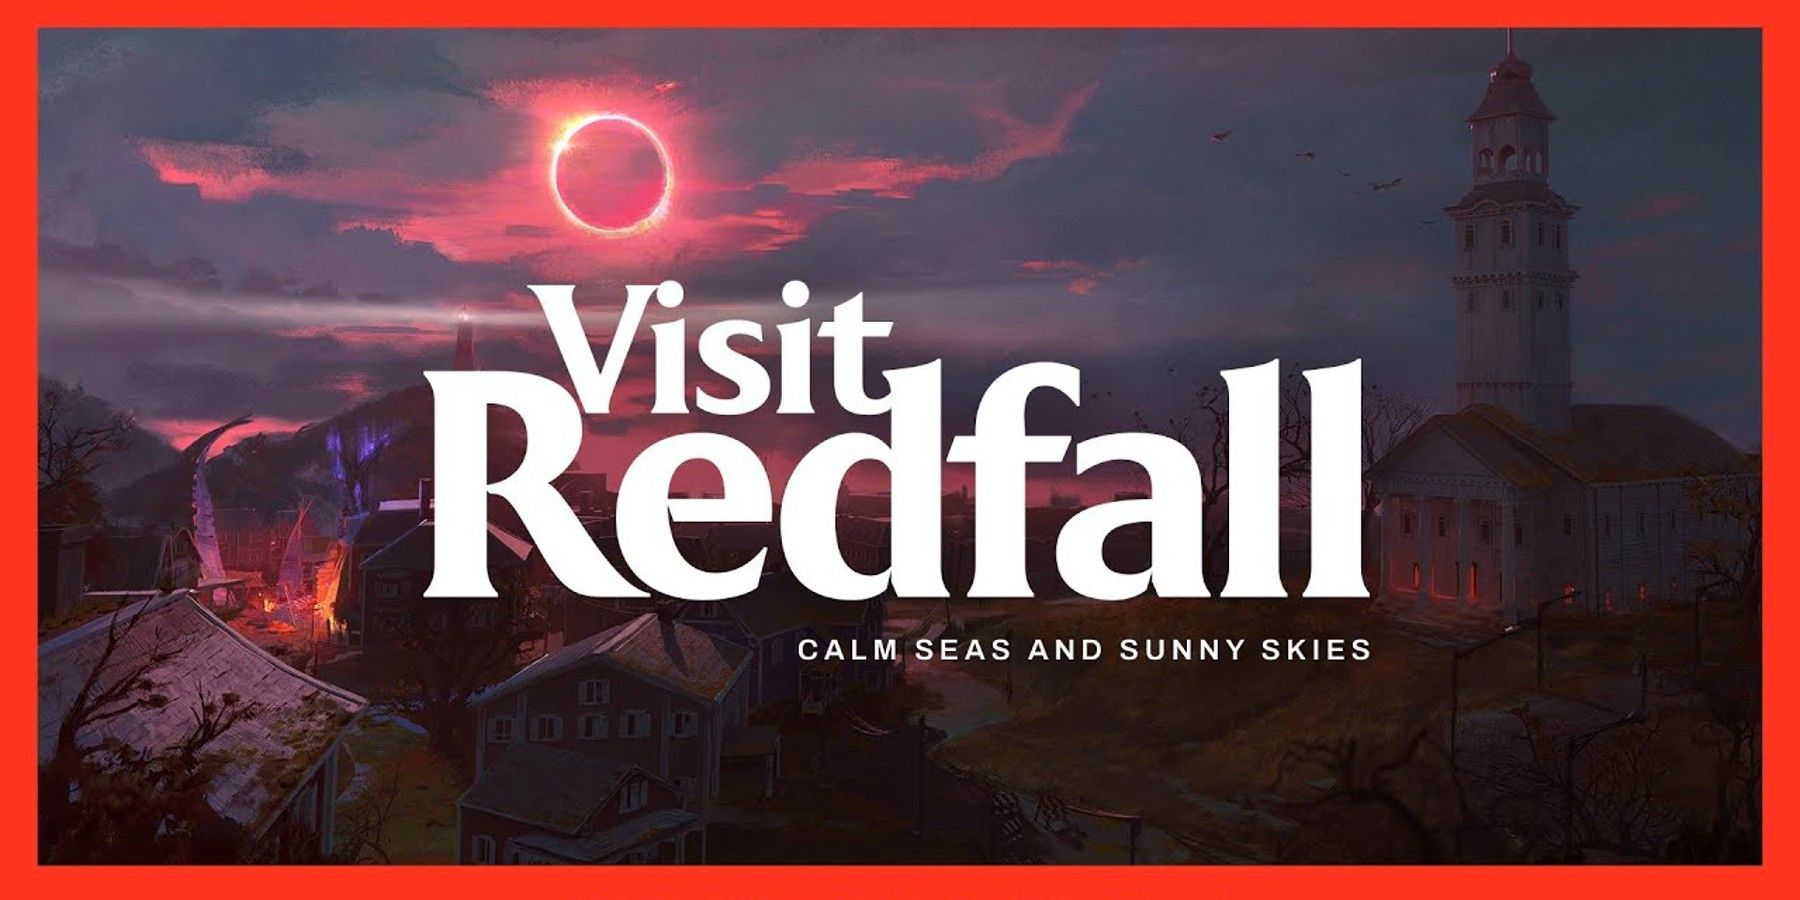 redfall game trailer